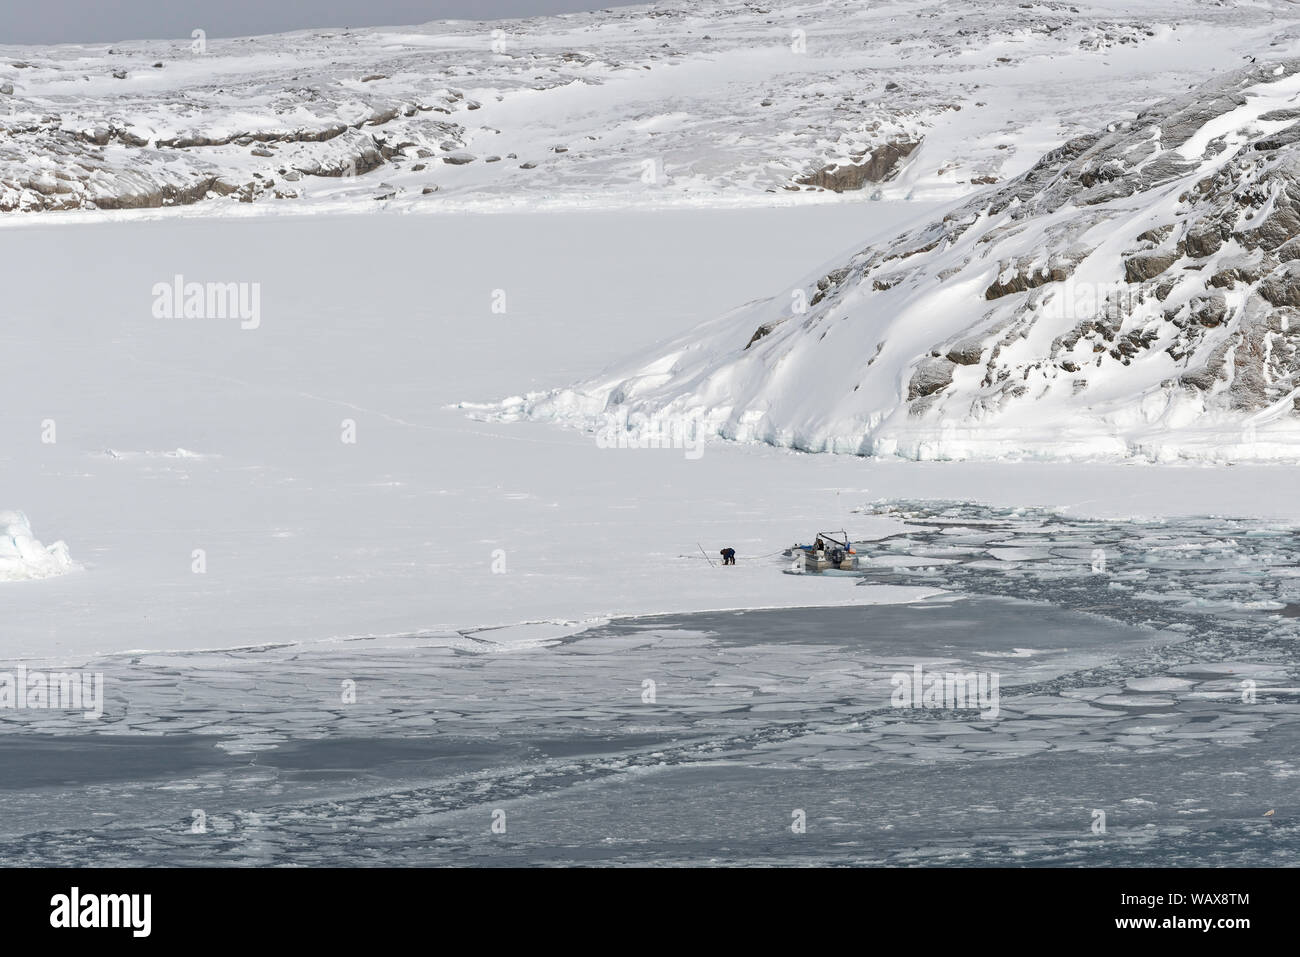 Eisfischer an der Küste von Ilulissat, Avannnaata Kommunia, Grönland, Dänemark. Fishing on ice in Ilulissat, Greenland, Denmark Stock Photo